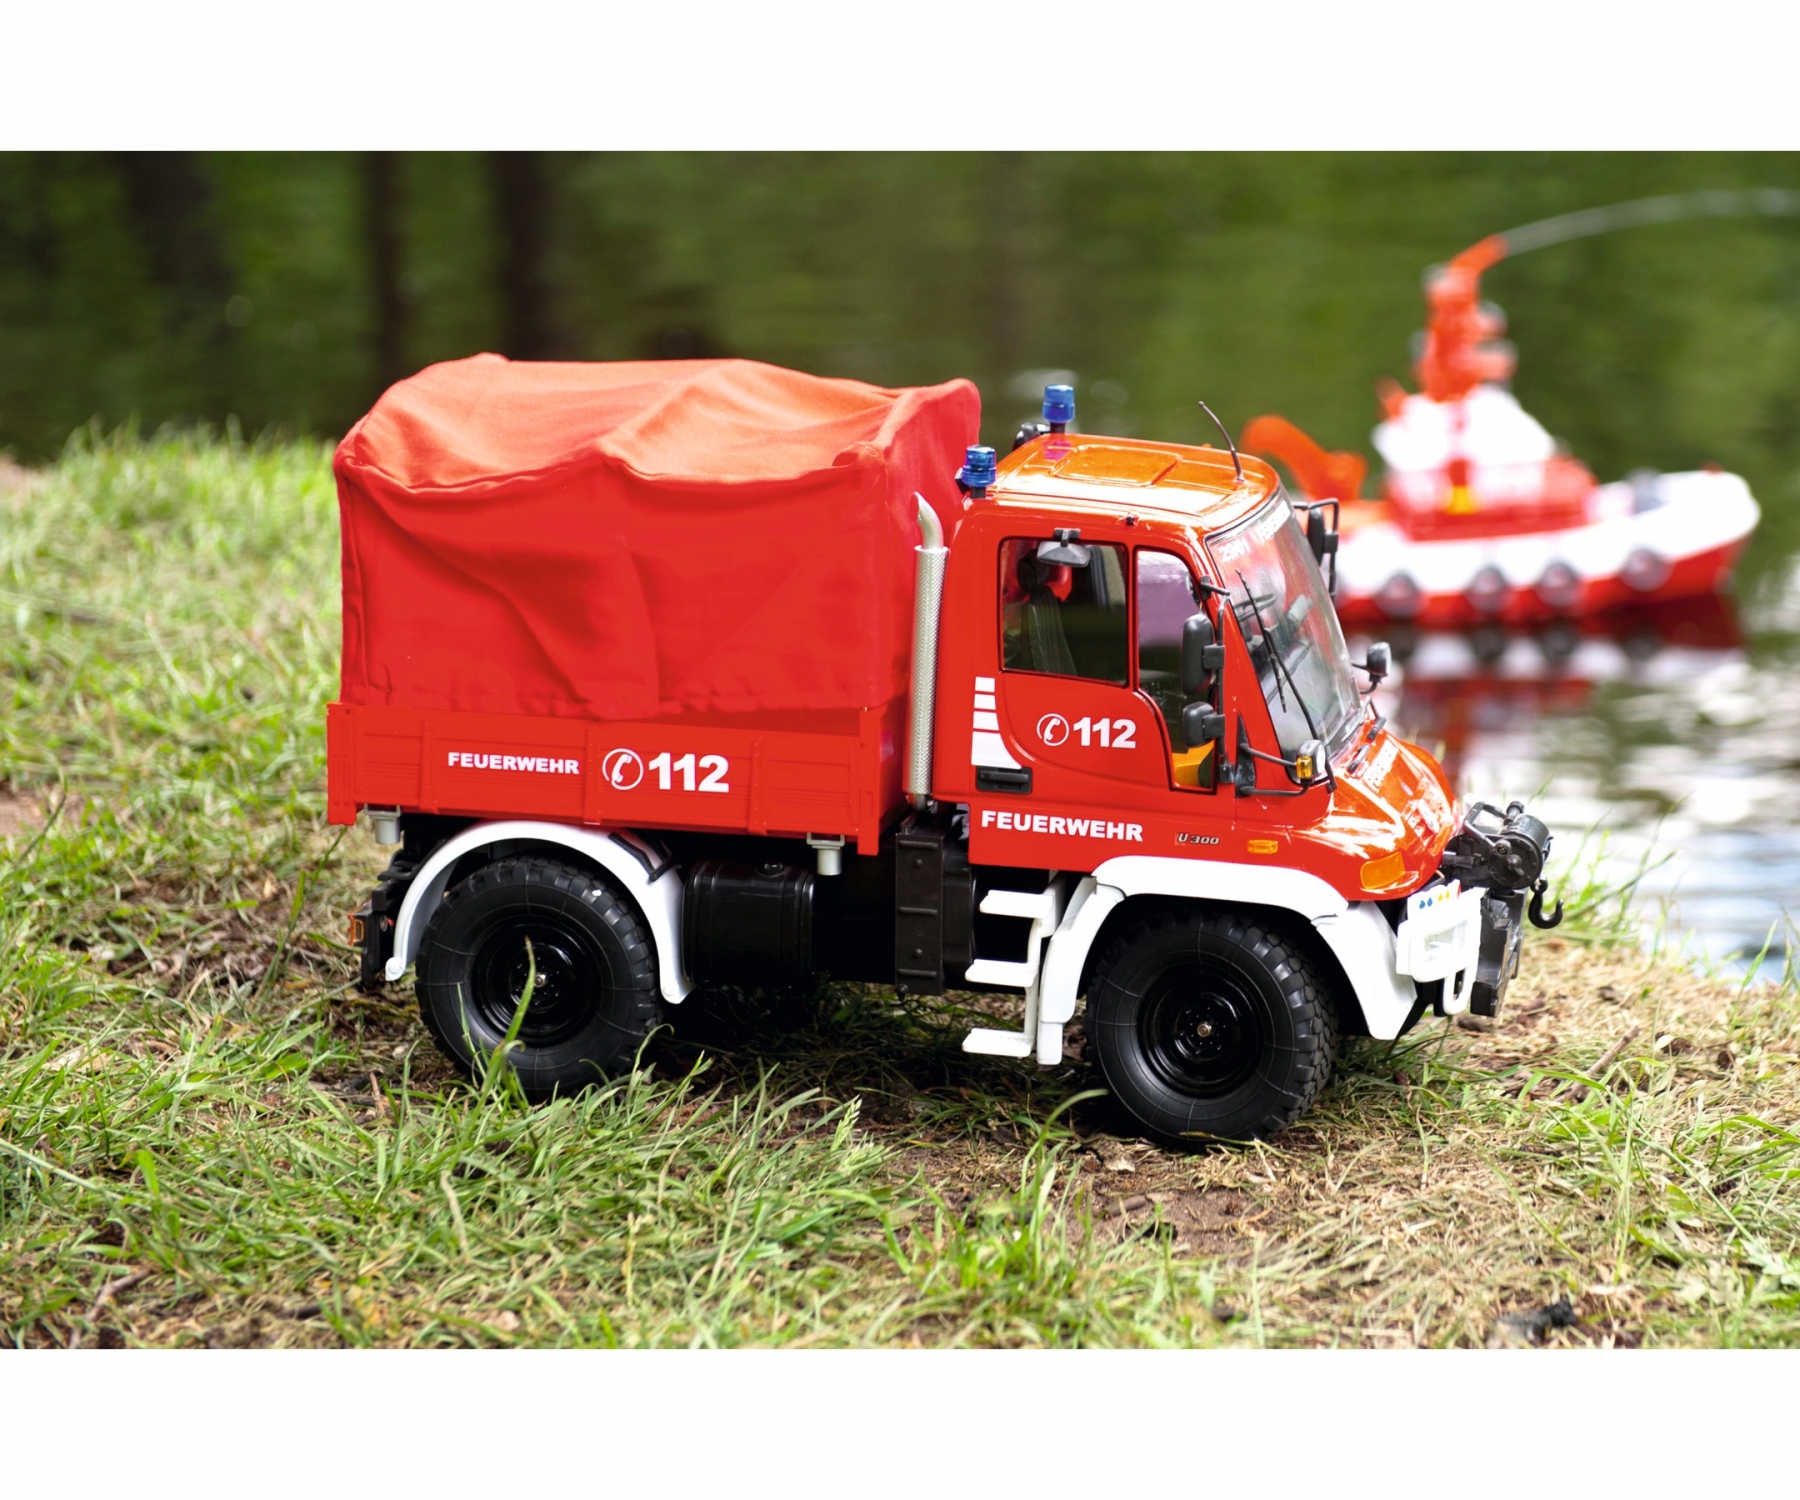 carson-500907721-4-Mercedes-Benz-Unimog-U300-Feuerwehr-RTR-mit-RC-Anlage-ferngesteuertes-Feuerwehrauto-für-Kinder-Erwachsene